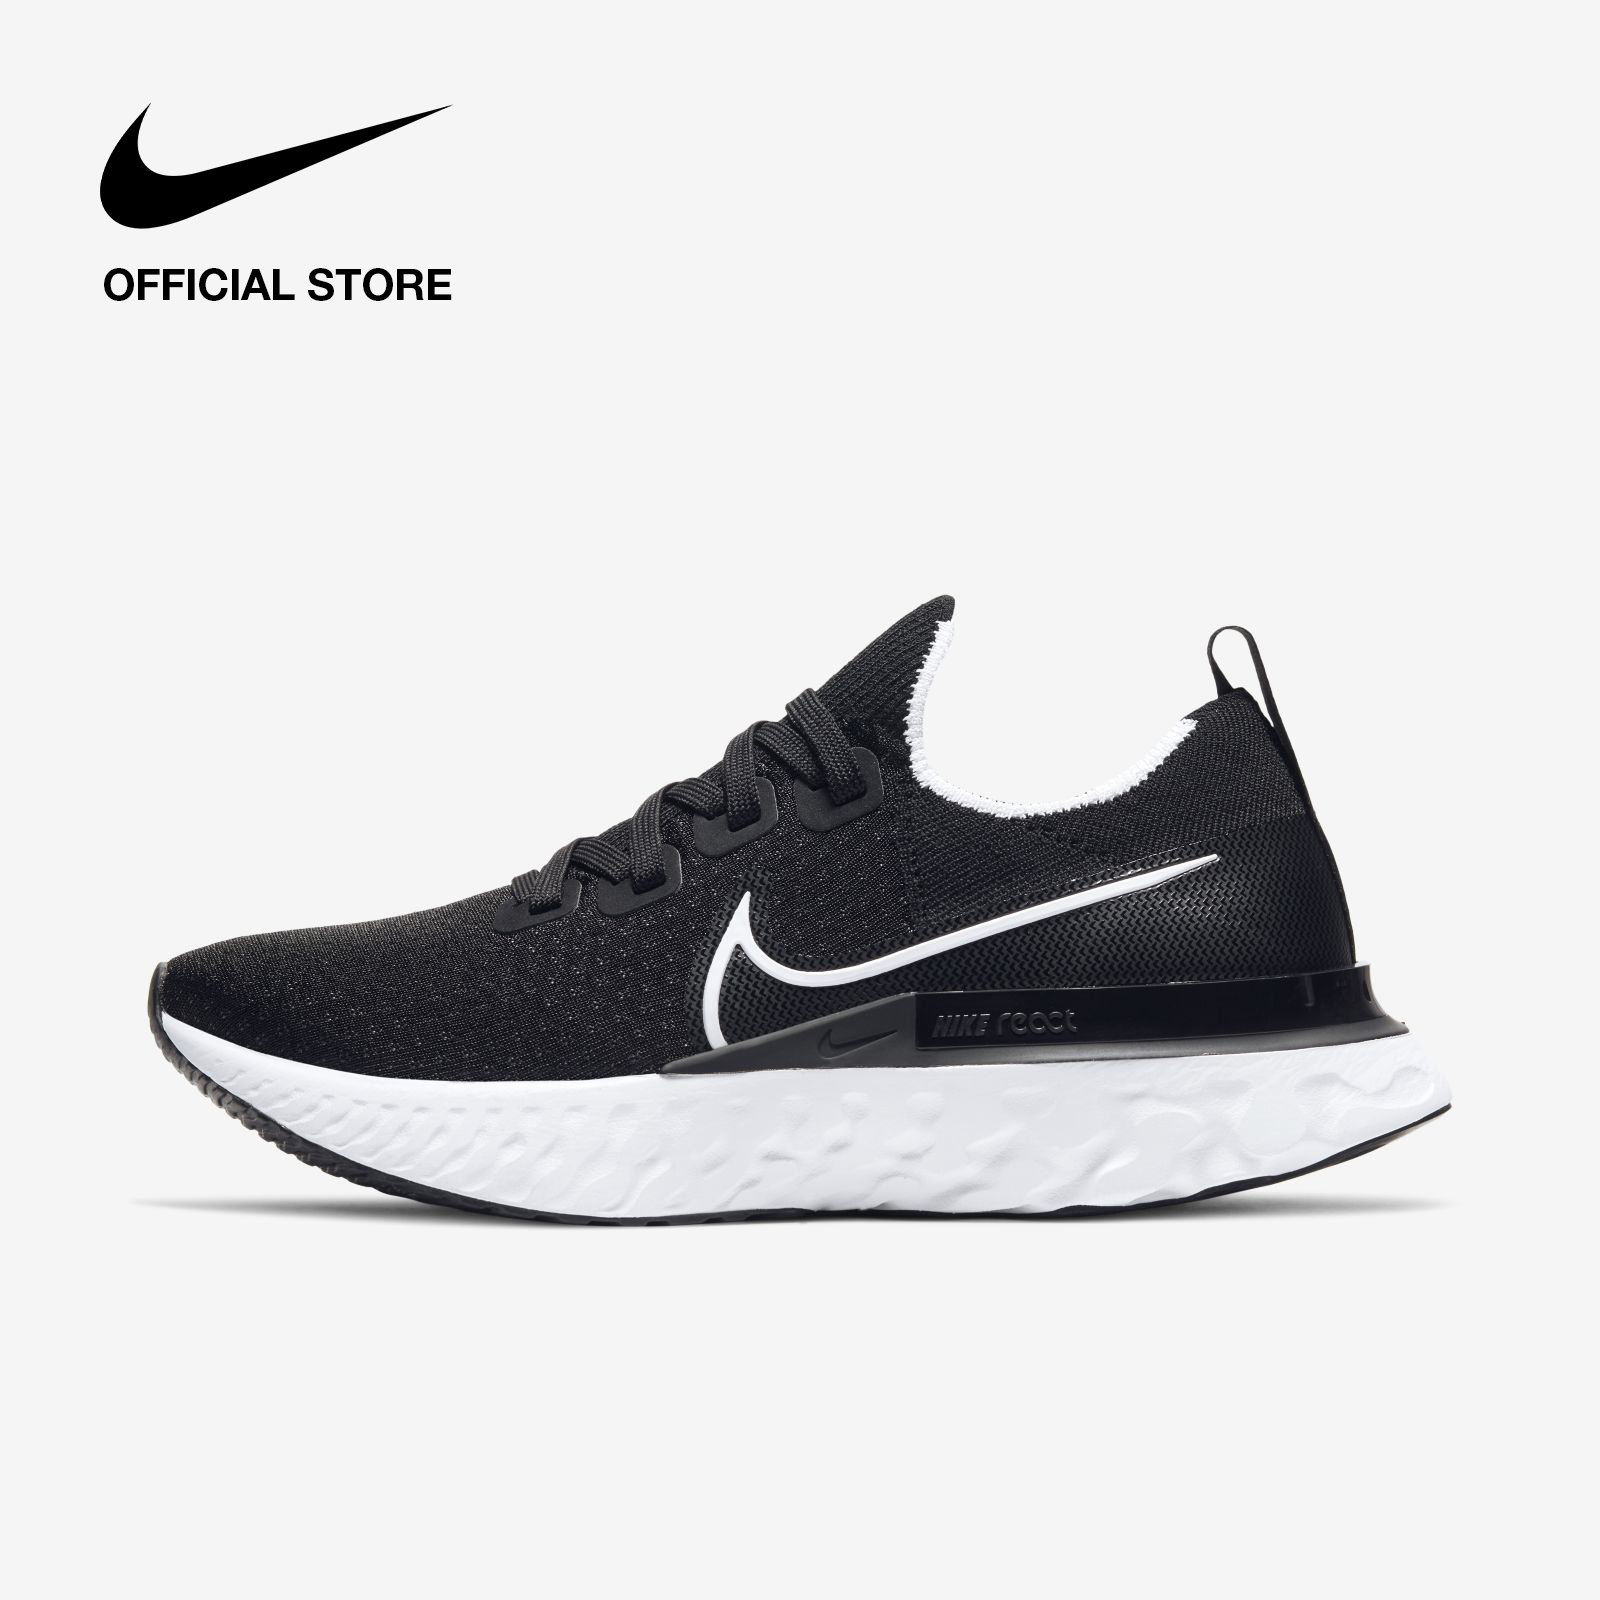 Nike Women's Infinity Run Shoes - Black ไนกี้ รองเท้าผู้หญิง อินฟินิตี้ รัน - สีดำ